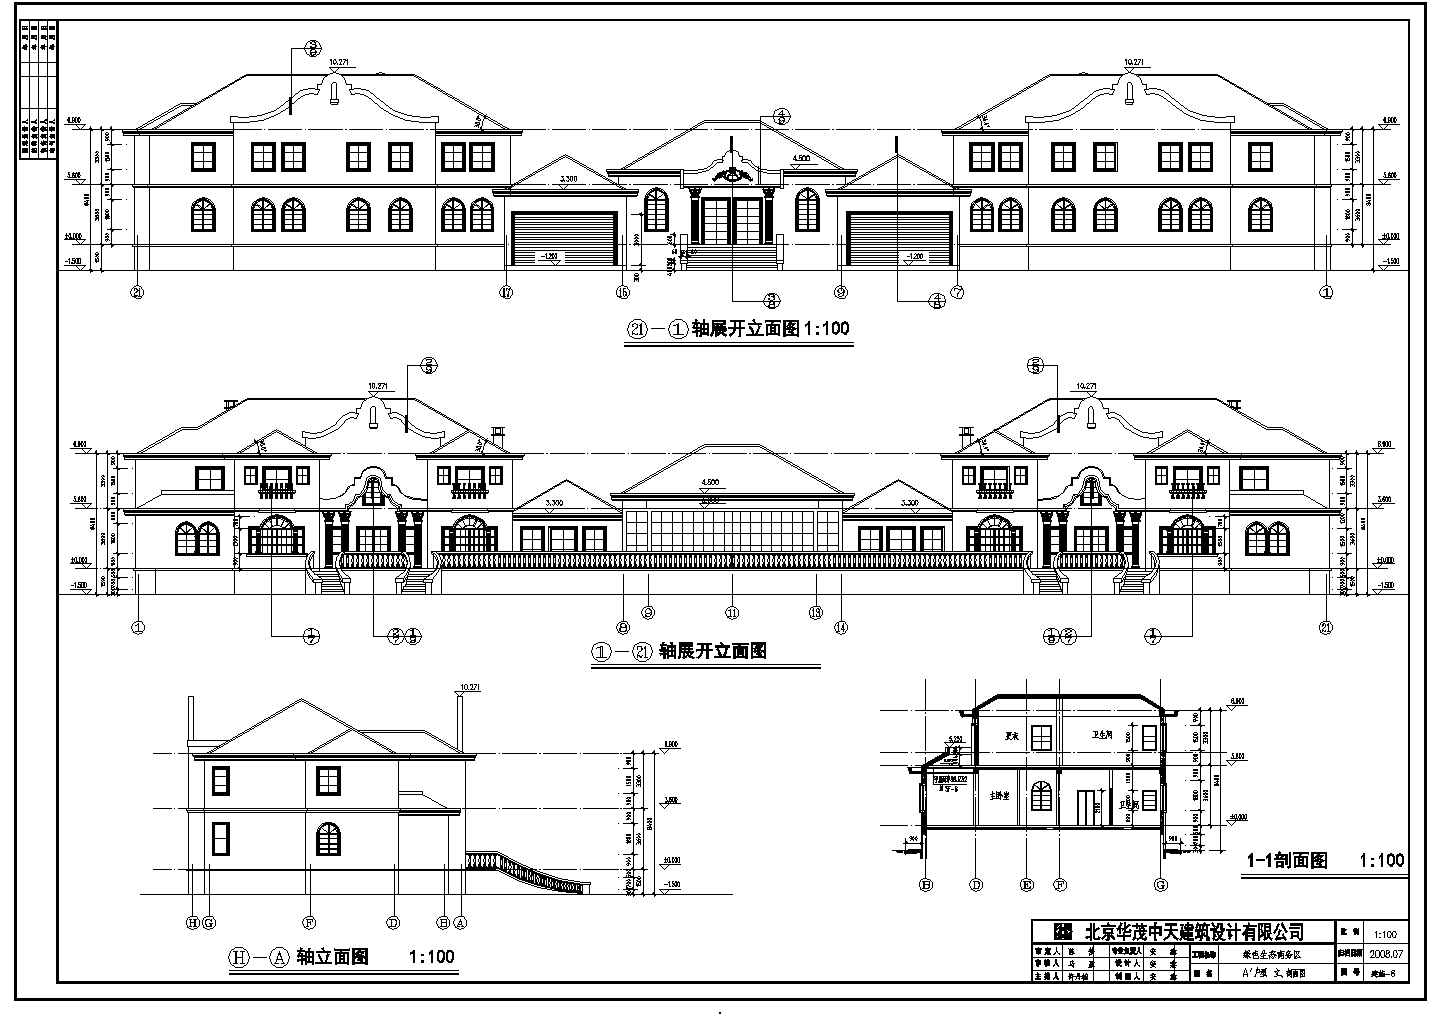 北京市密云区某二层楼别墅建筑设计施工图